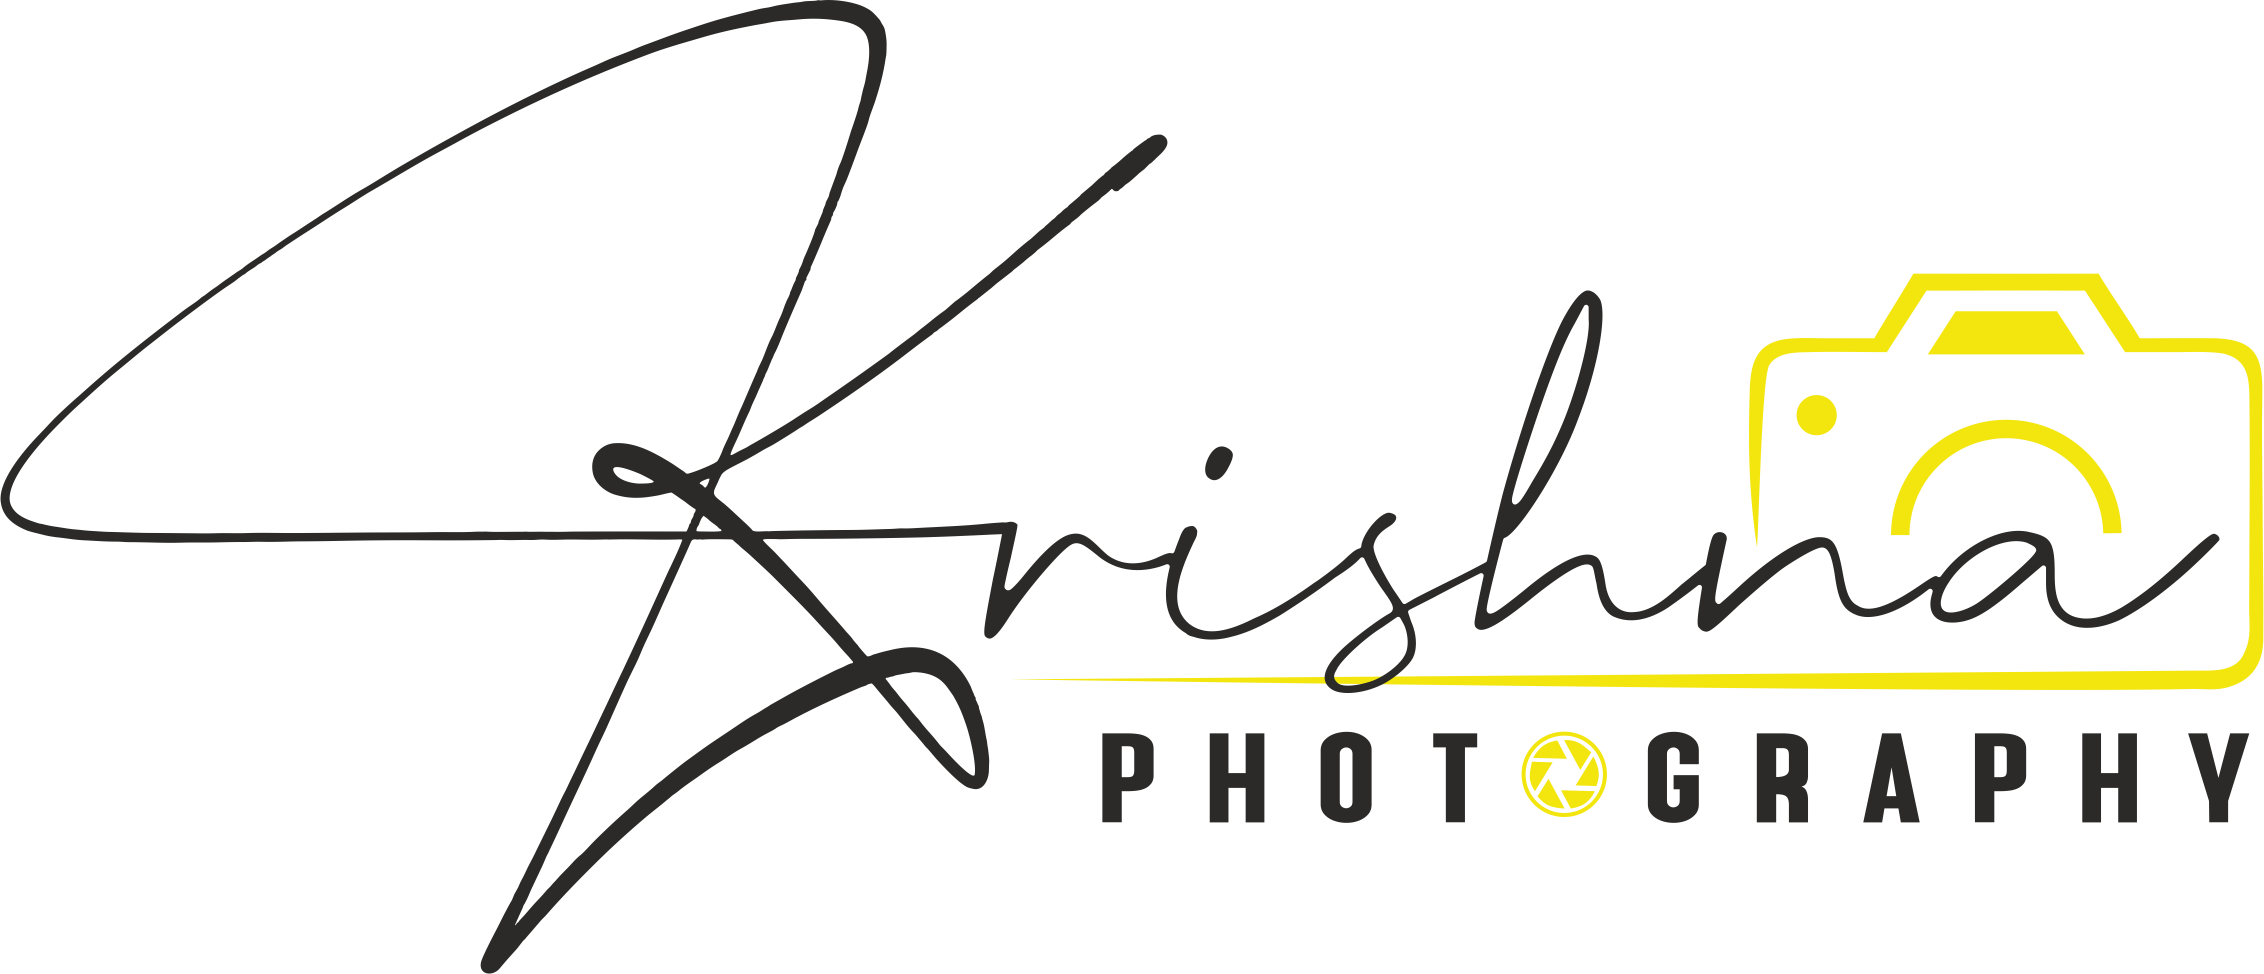 How to make photography Logo | Signature logo kaise banaye | New logo  design - YouTube